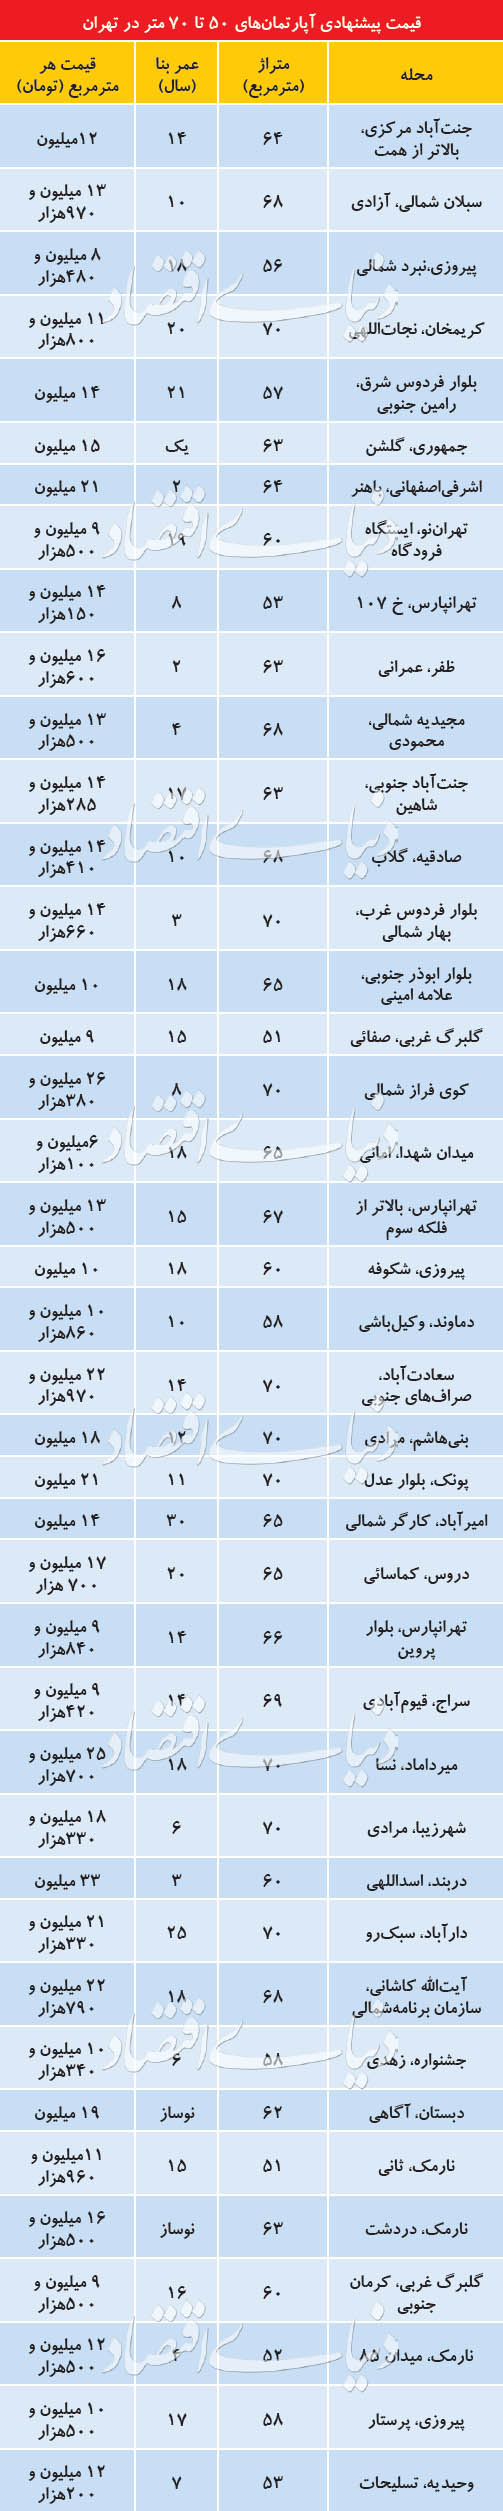 قیمت پیشنهادی املاک ۵۰ تا ۷۰مترمربع در تهران+ جدول